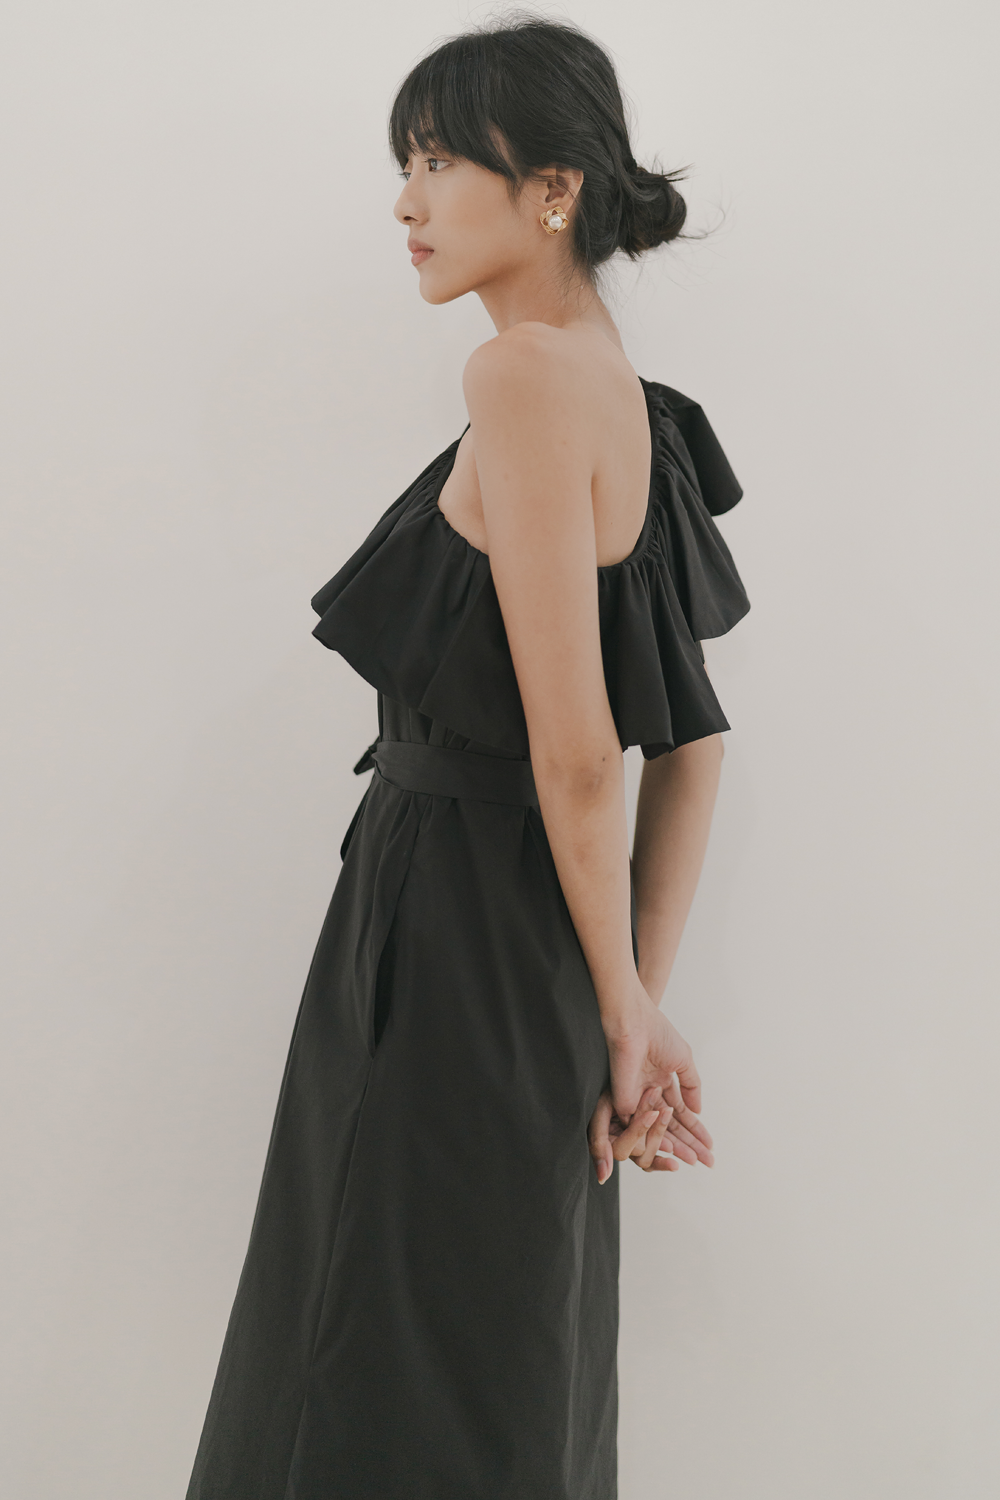 Tara One Shoulder Dress in Black (30% OFF)